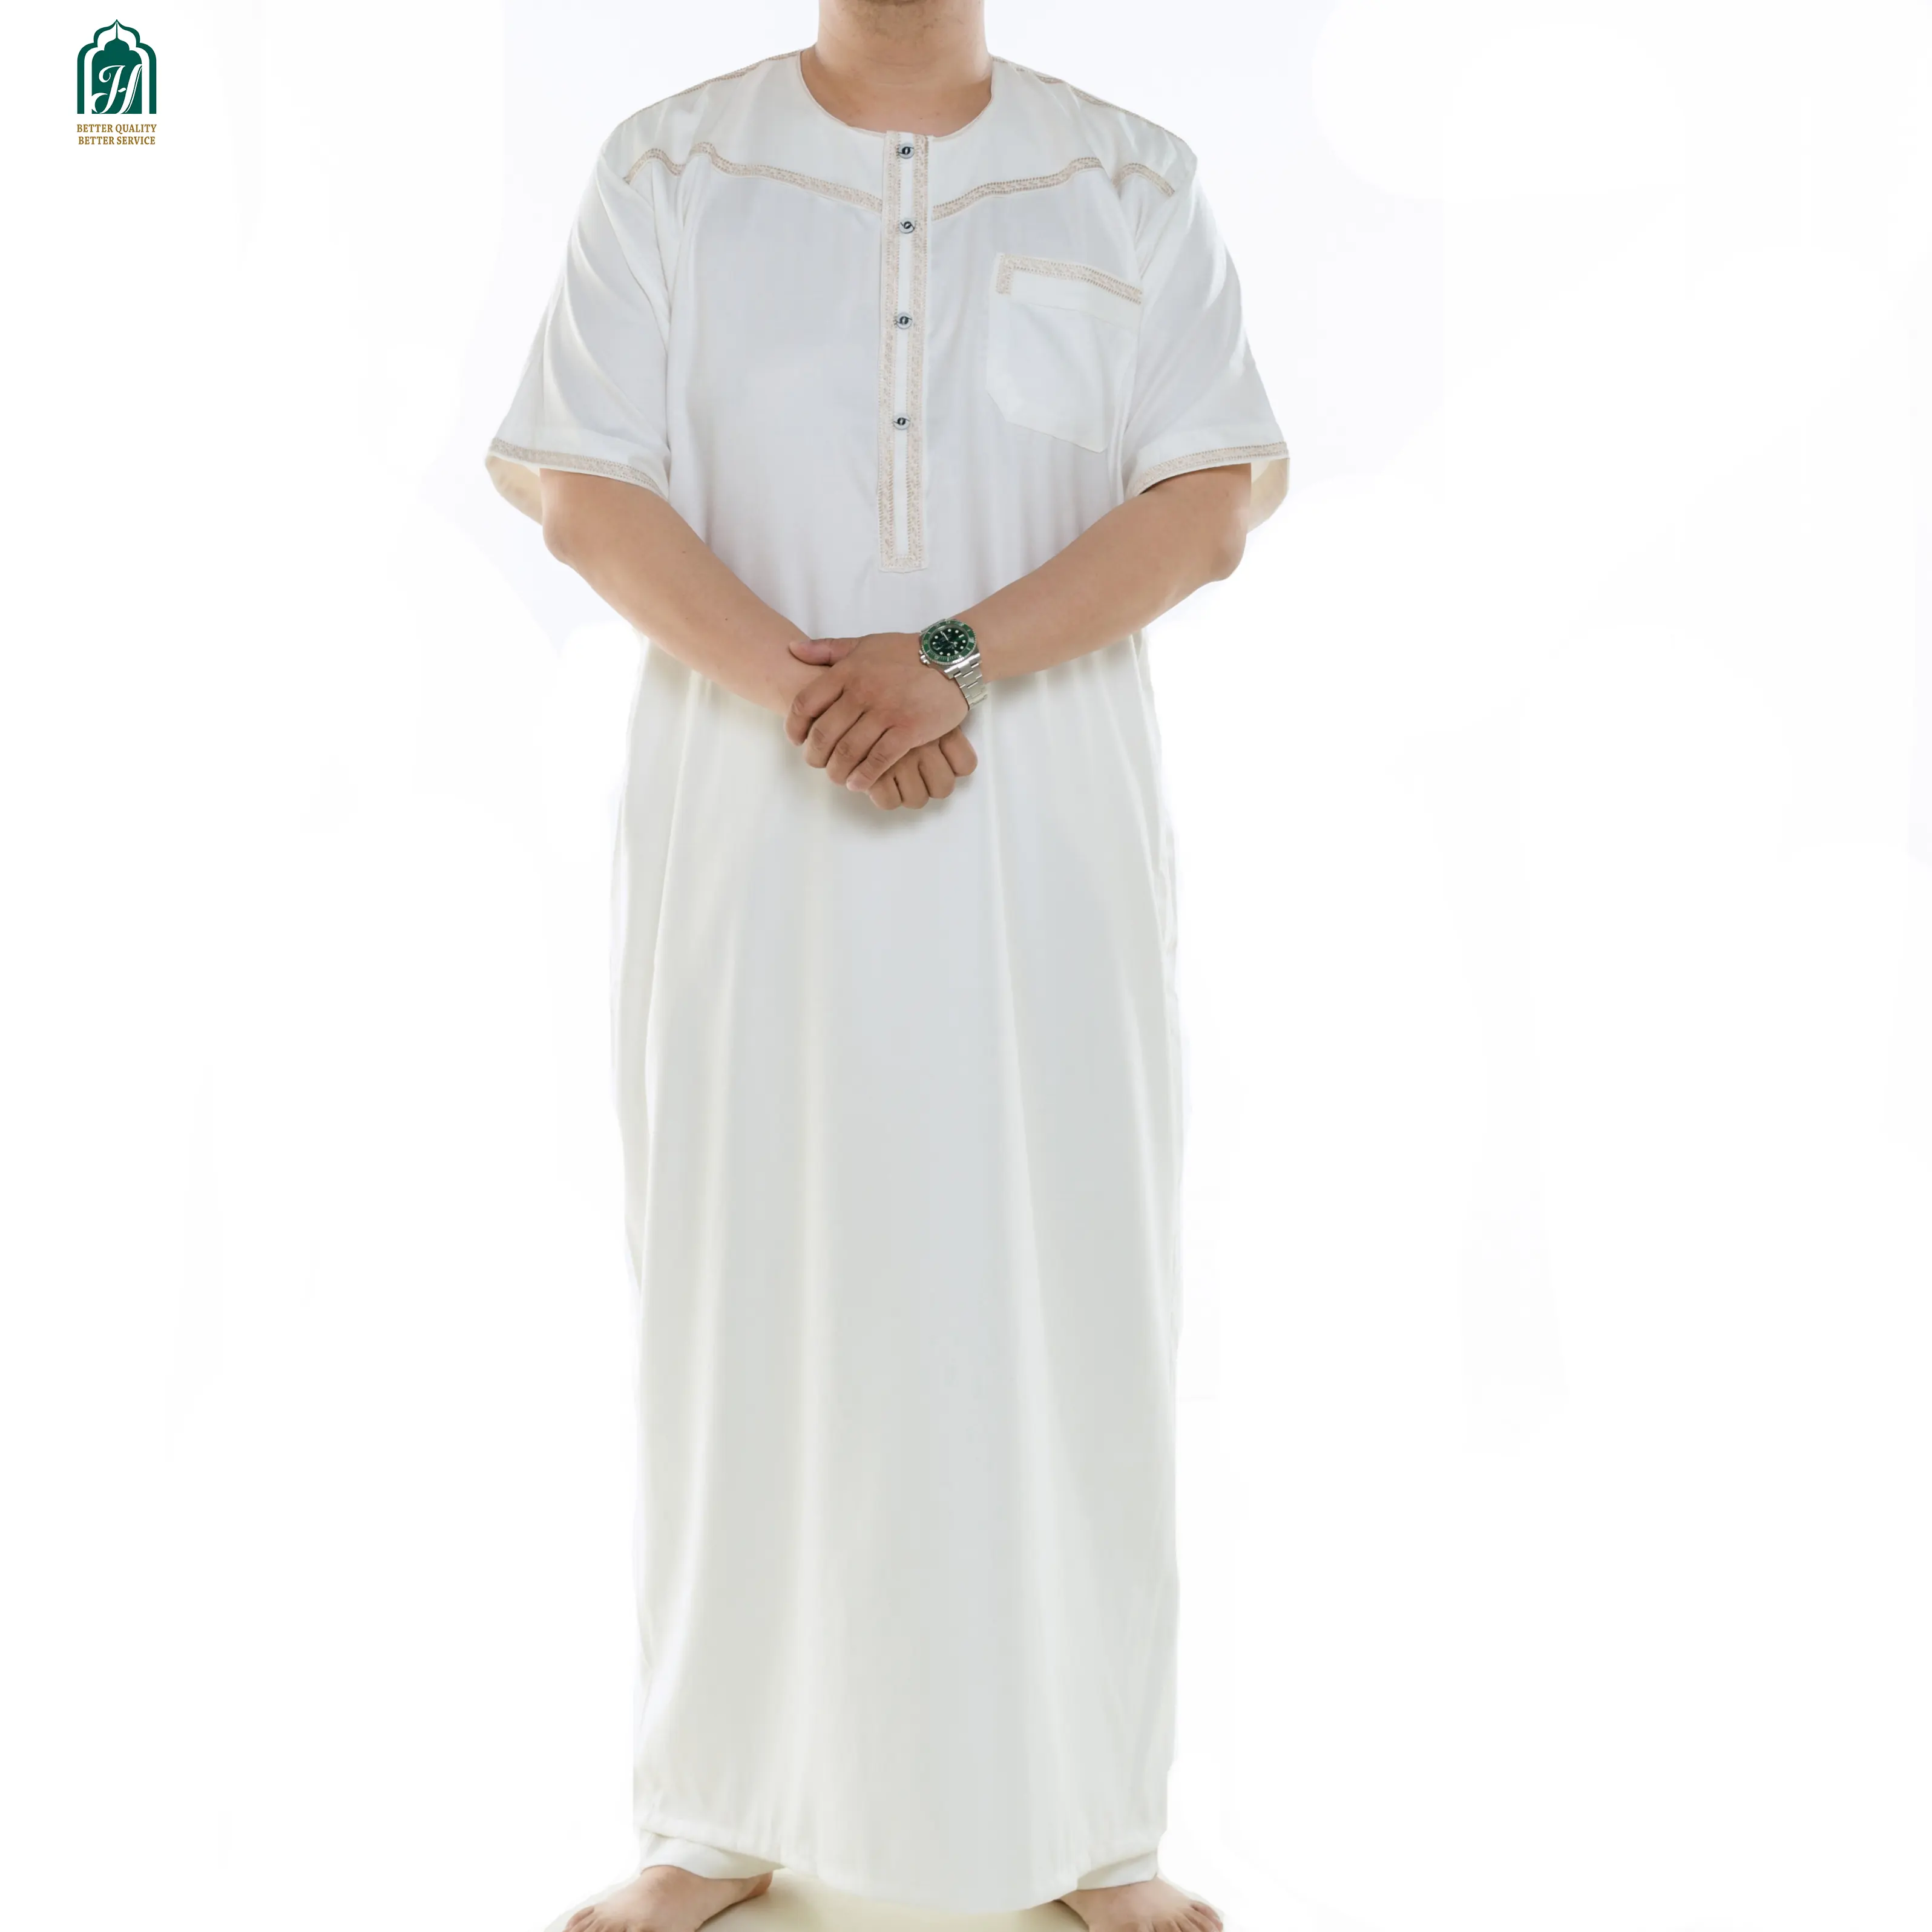 อิสลามเสื้อผ้าคุณภาพดีการออกแบบที่ทันสมัยปากีสถานผู้ชายสำเนียงสีเทา Thobe แฟชั่น Jubba